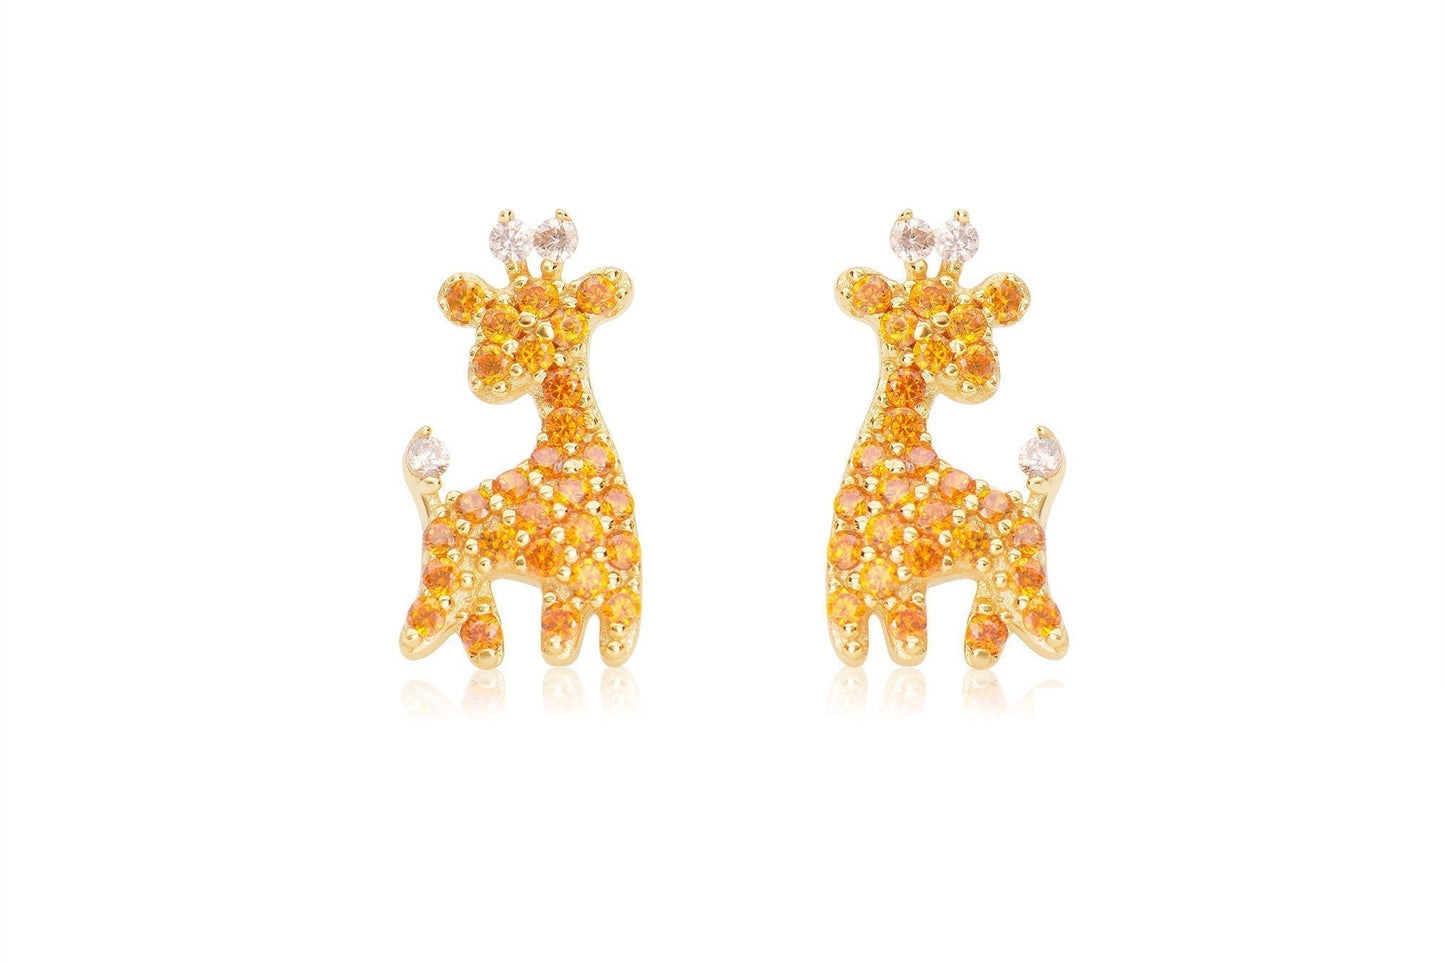 Cute Animal Giraffe Stud Earrings in Sterling Silver